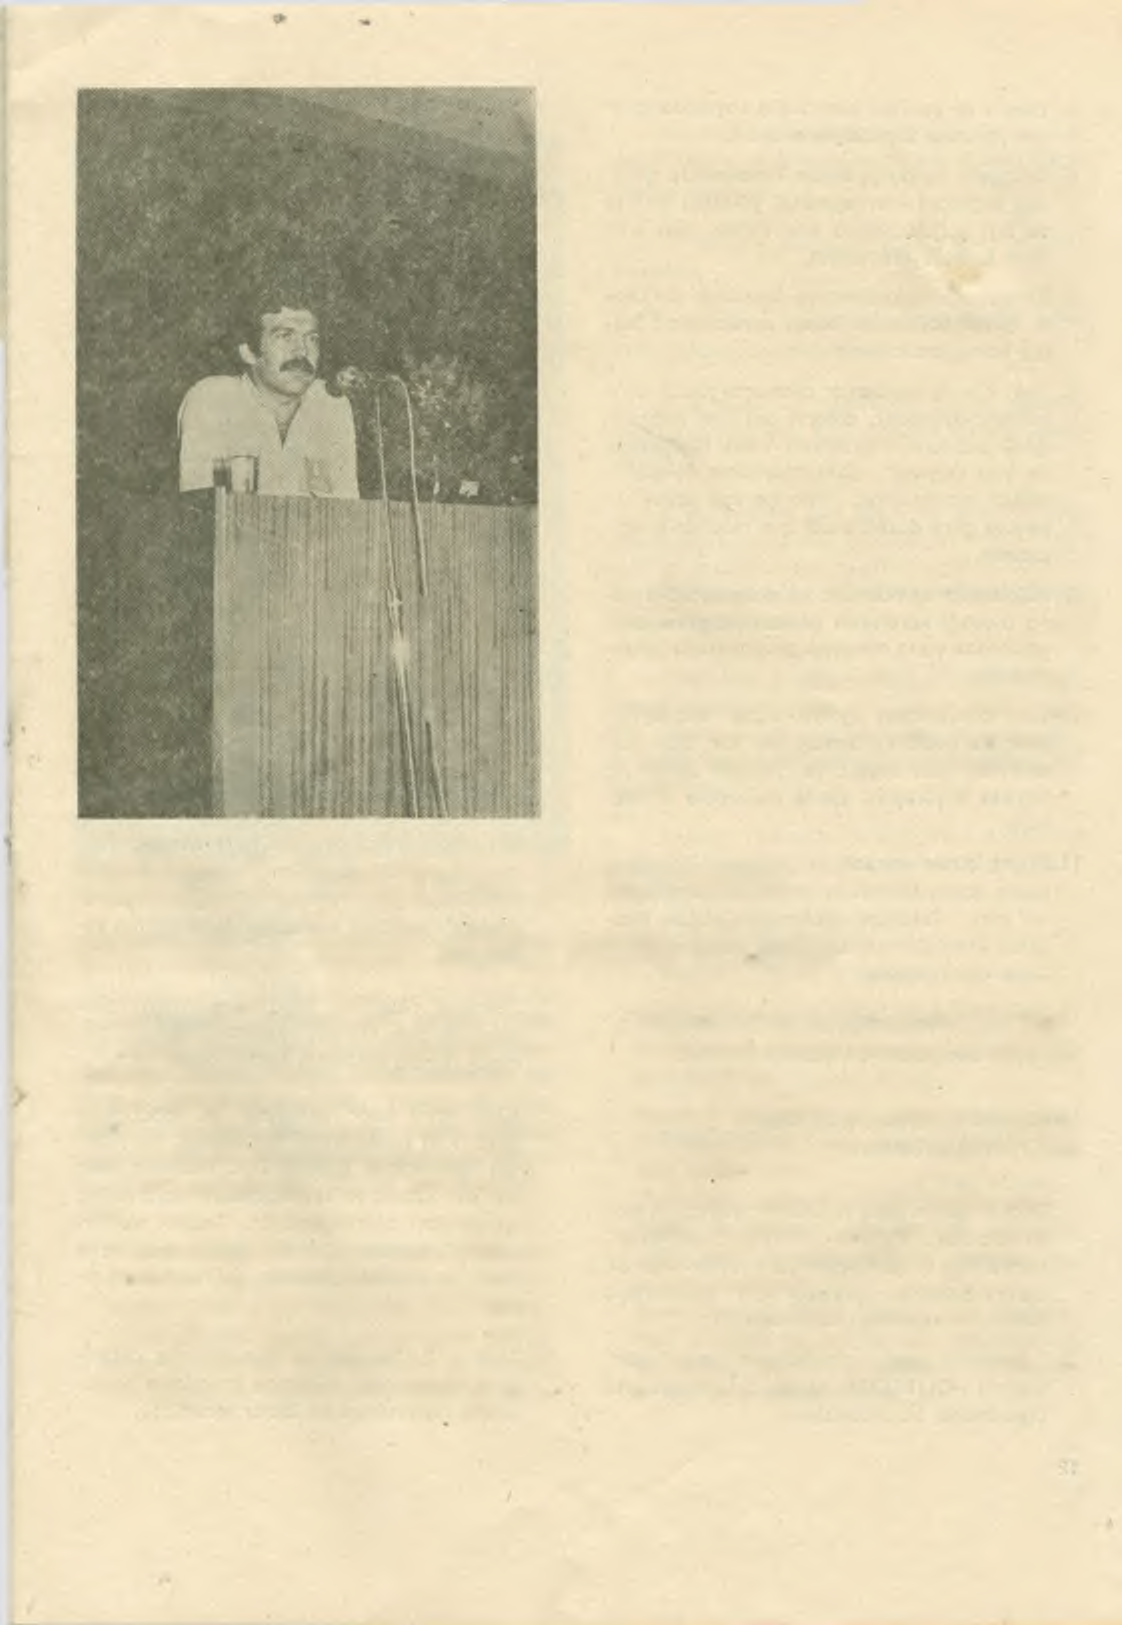 M. Y. Okuîıarım tcmsilen konuşan İzmit M.Y.O. Demeği Başkanı TAHSİN ATALAY: 21-22-23 Kasım 1978 tarihlerinde bilimsel toplantıda alınan kararların hayata geçirilmesi tüm M.Y.O. öğrencilerinin ön isteğidir.